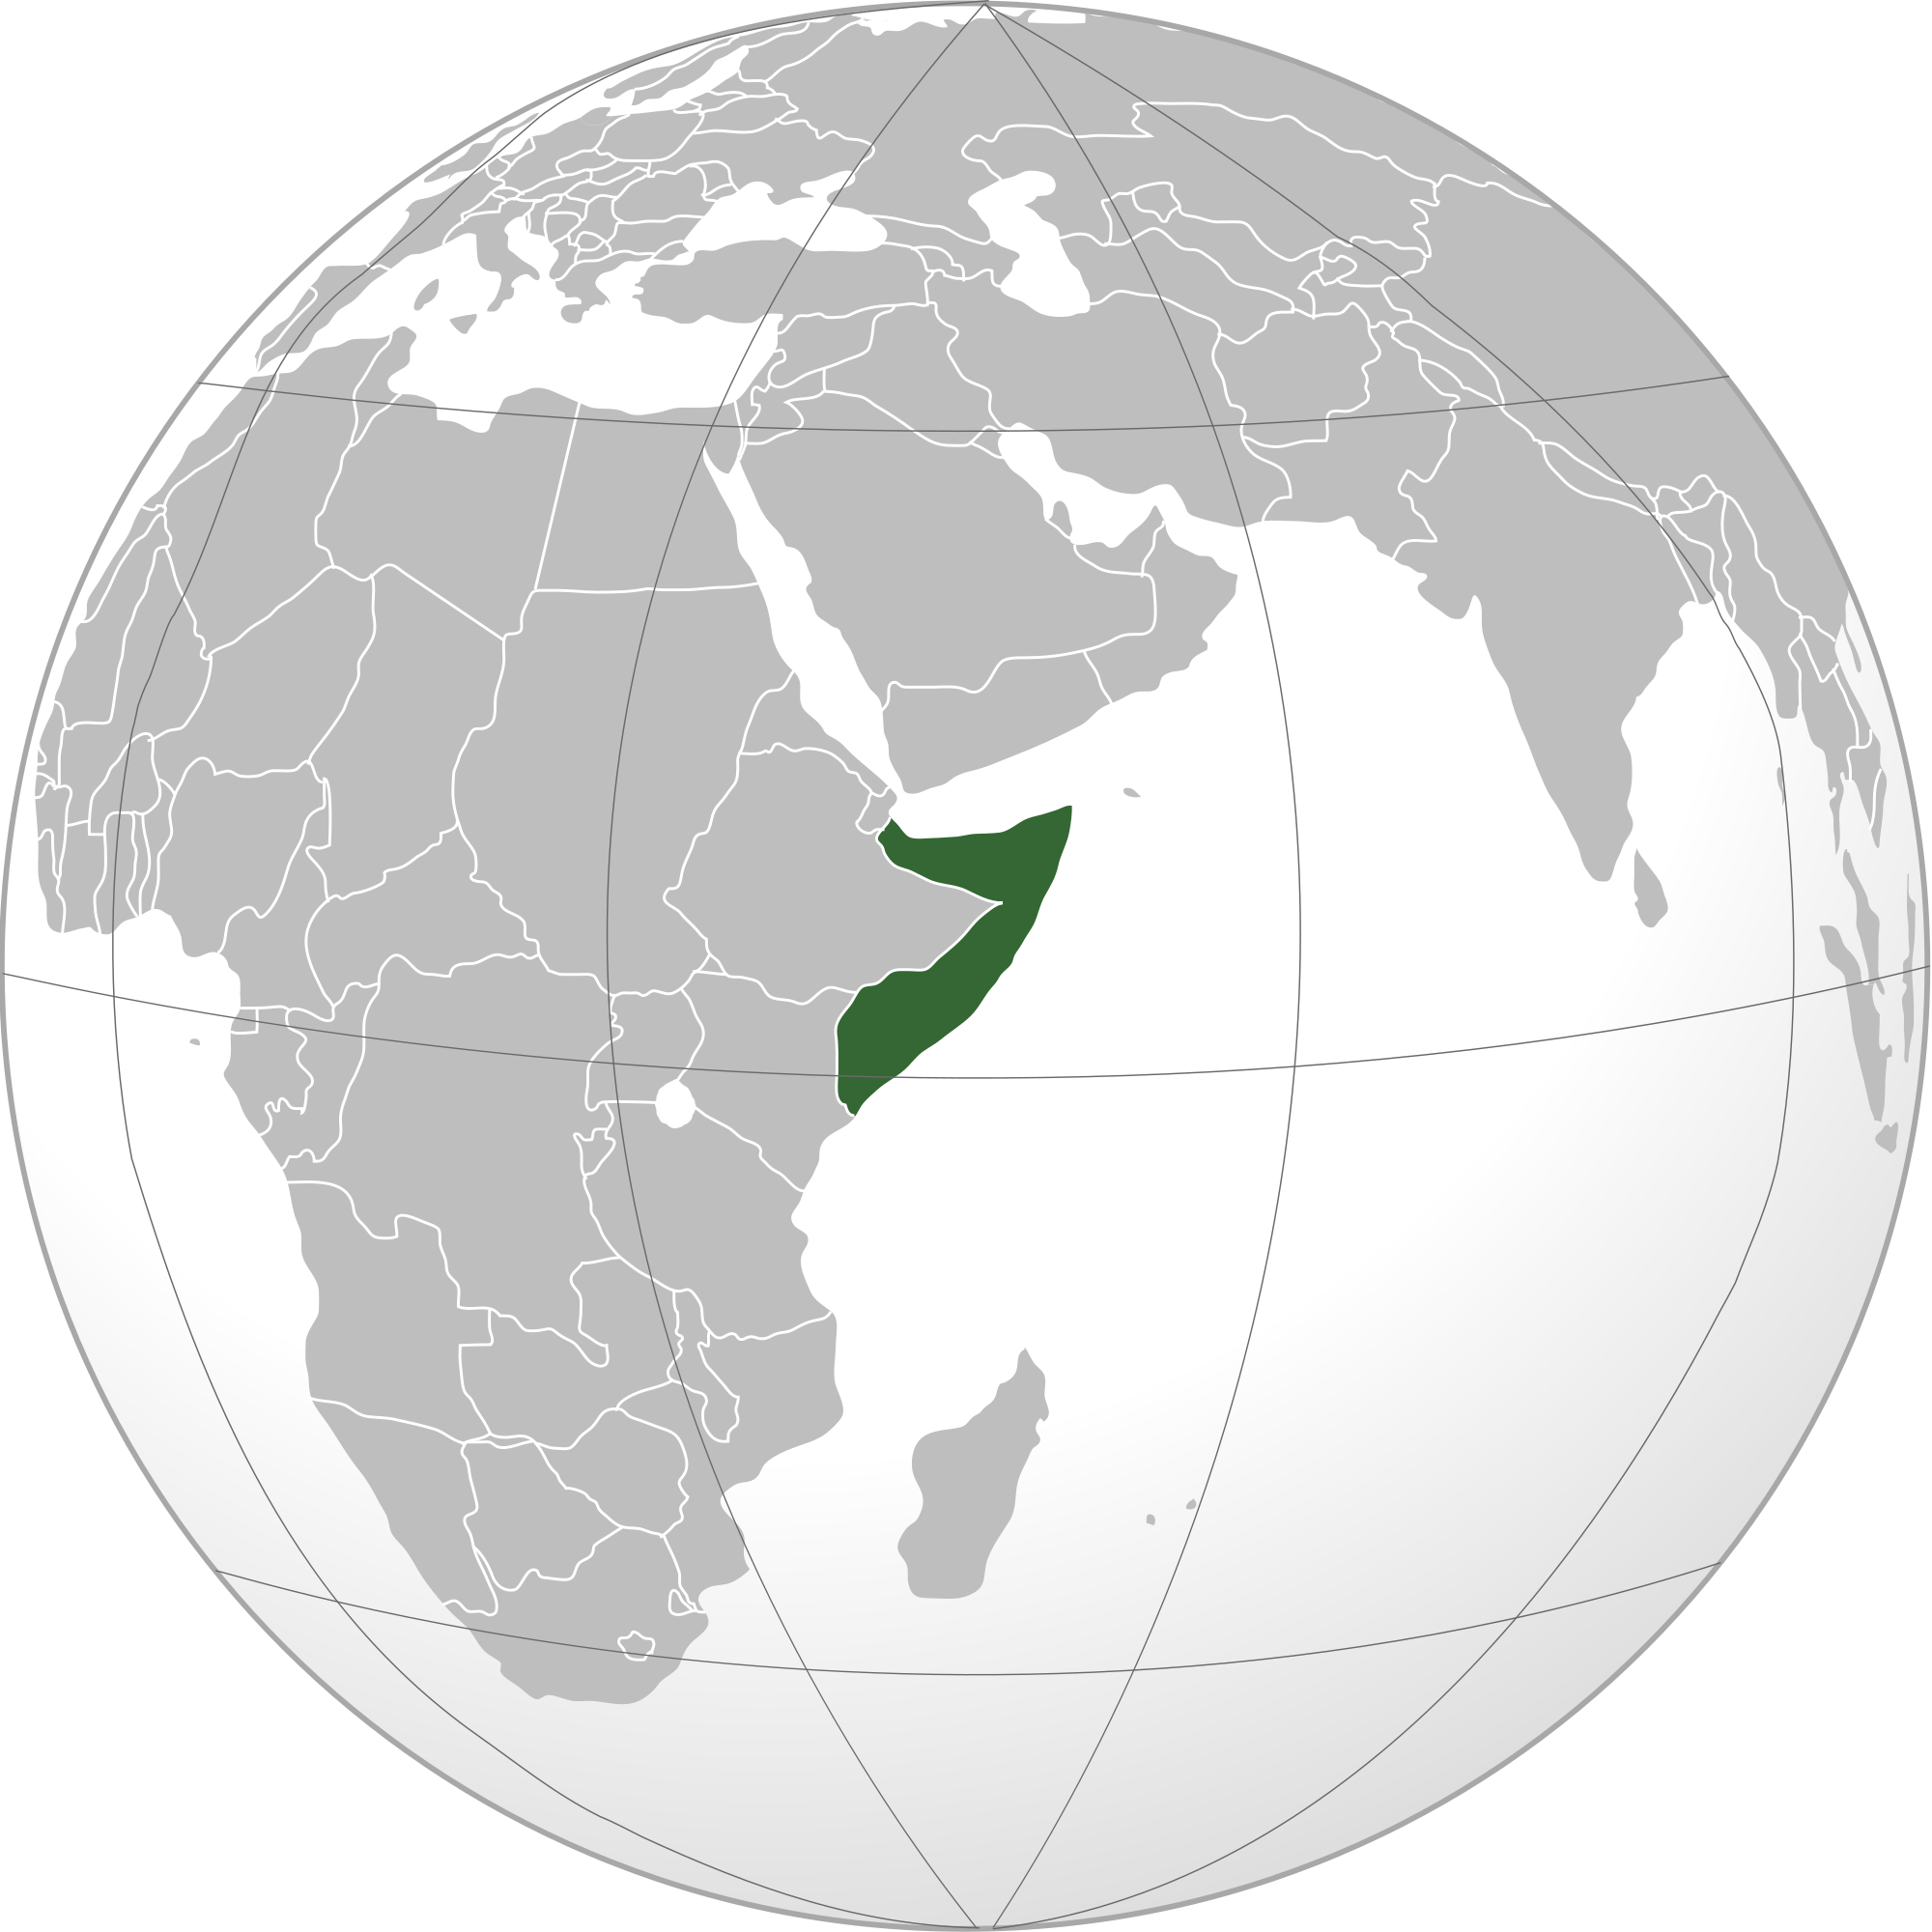 Somaliaon Globe